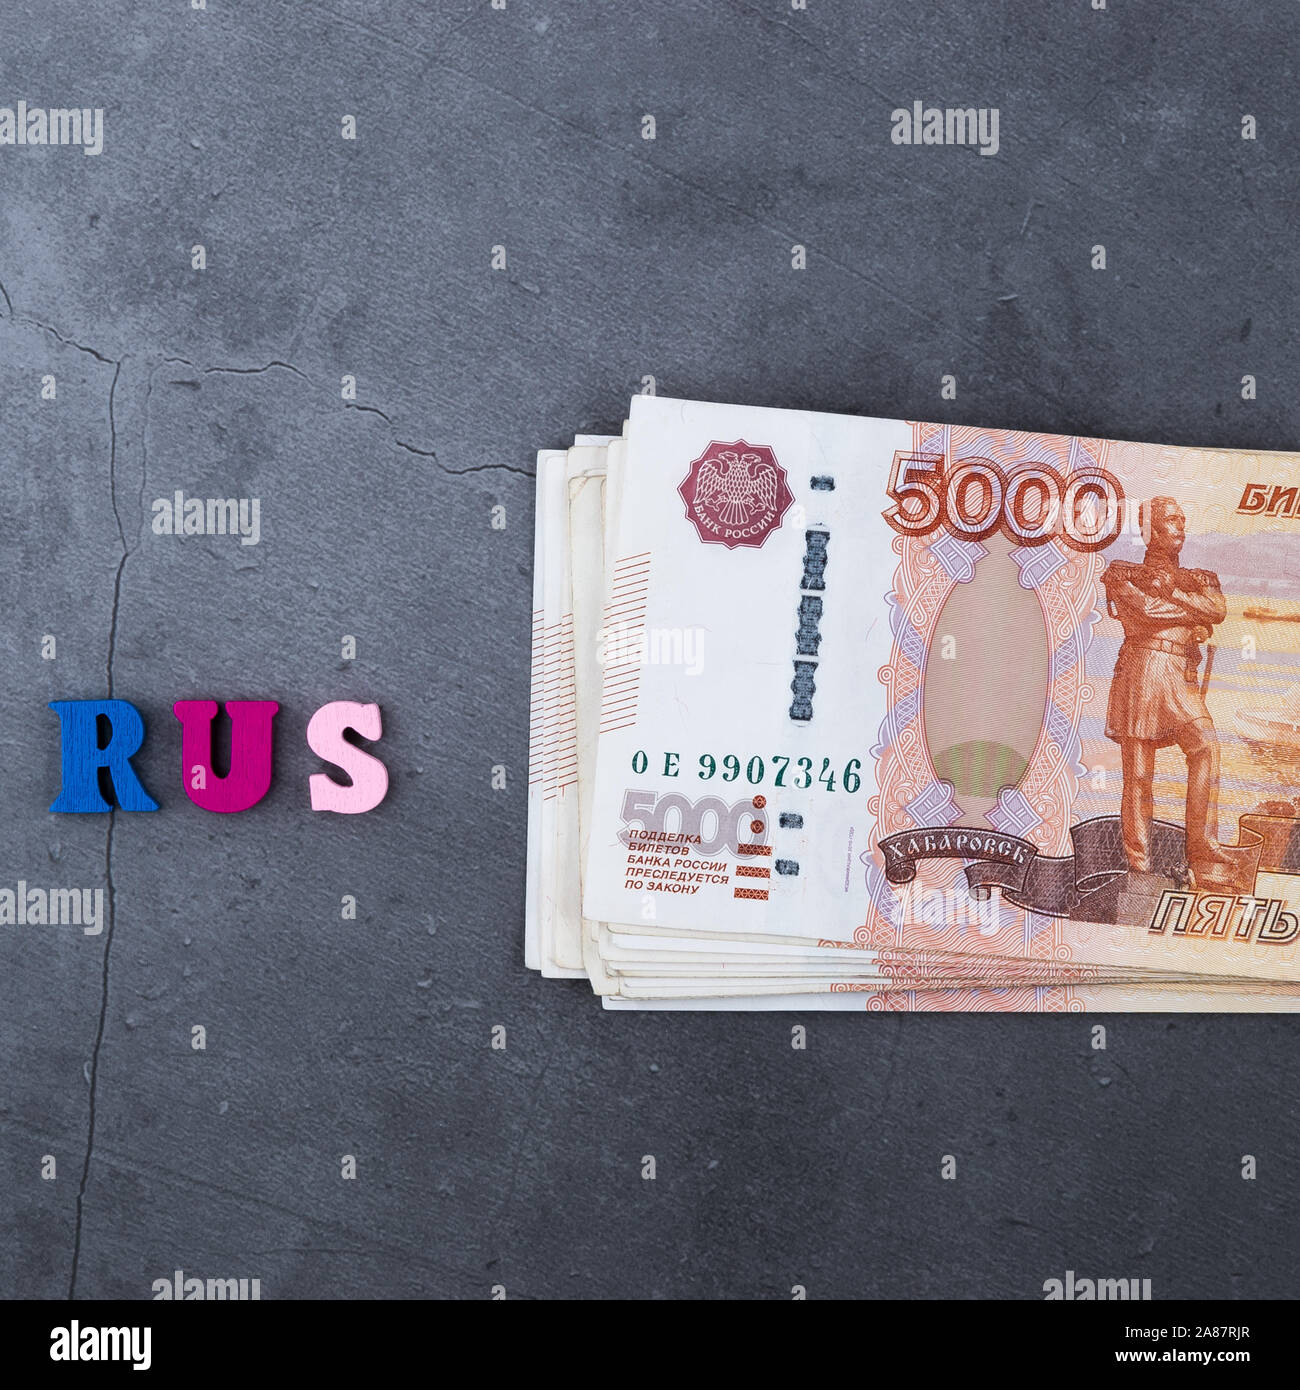 Pile de billets de l'argent russe de cinq mille roubles posé sur une base de ciment gris Banque D'Images